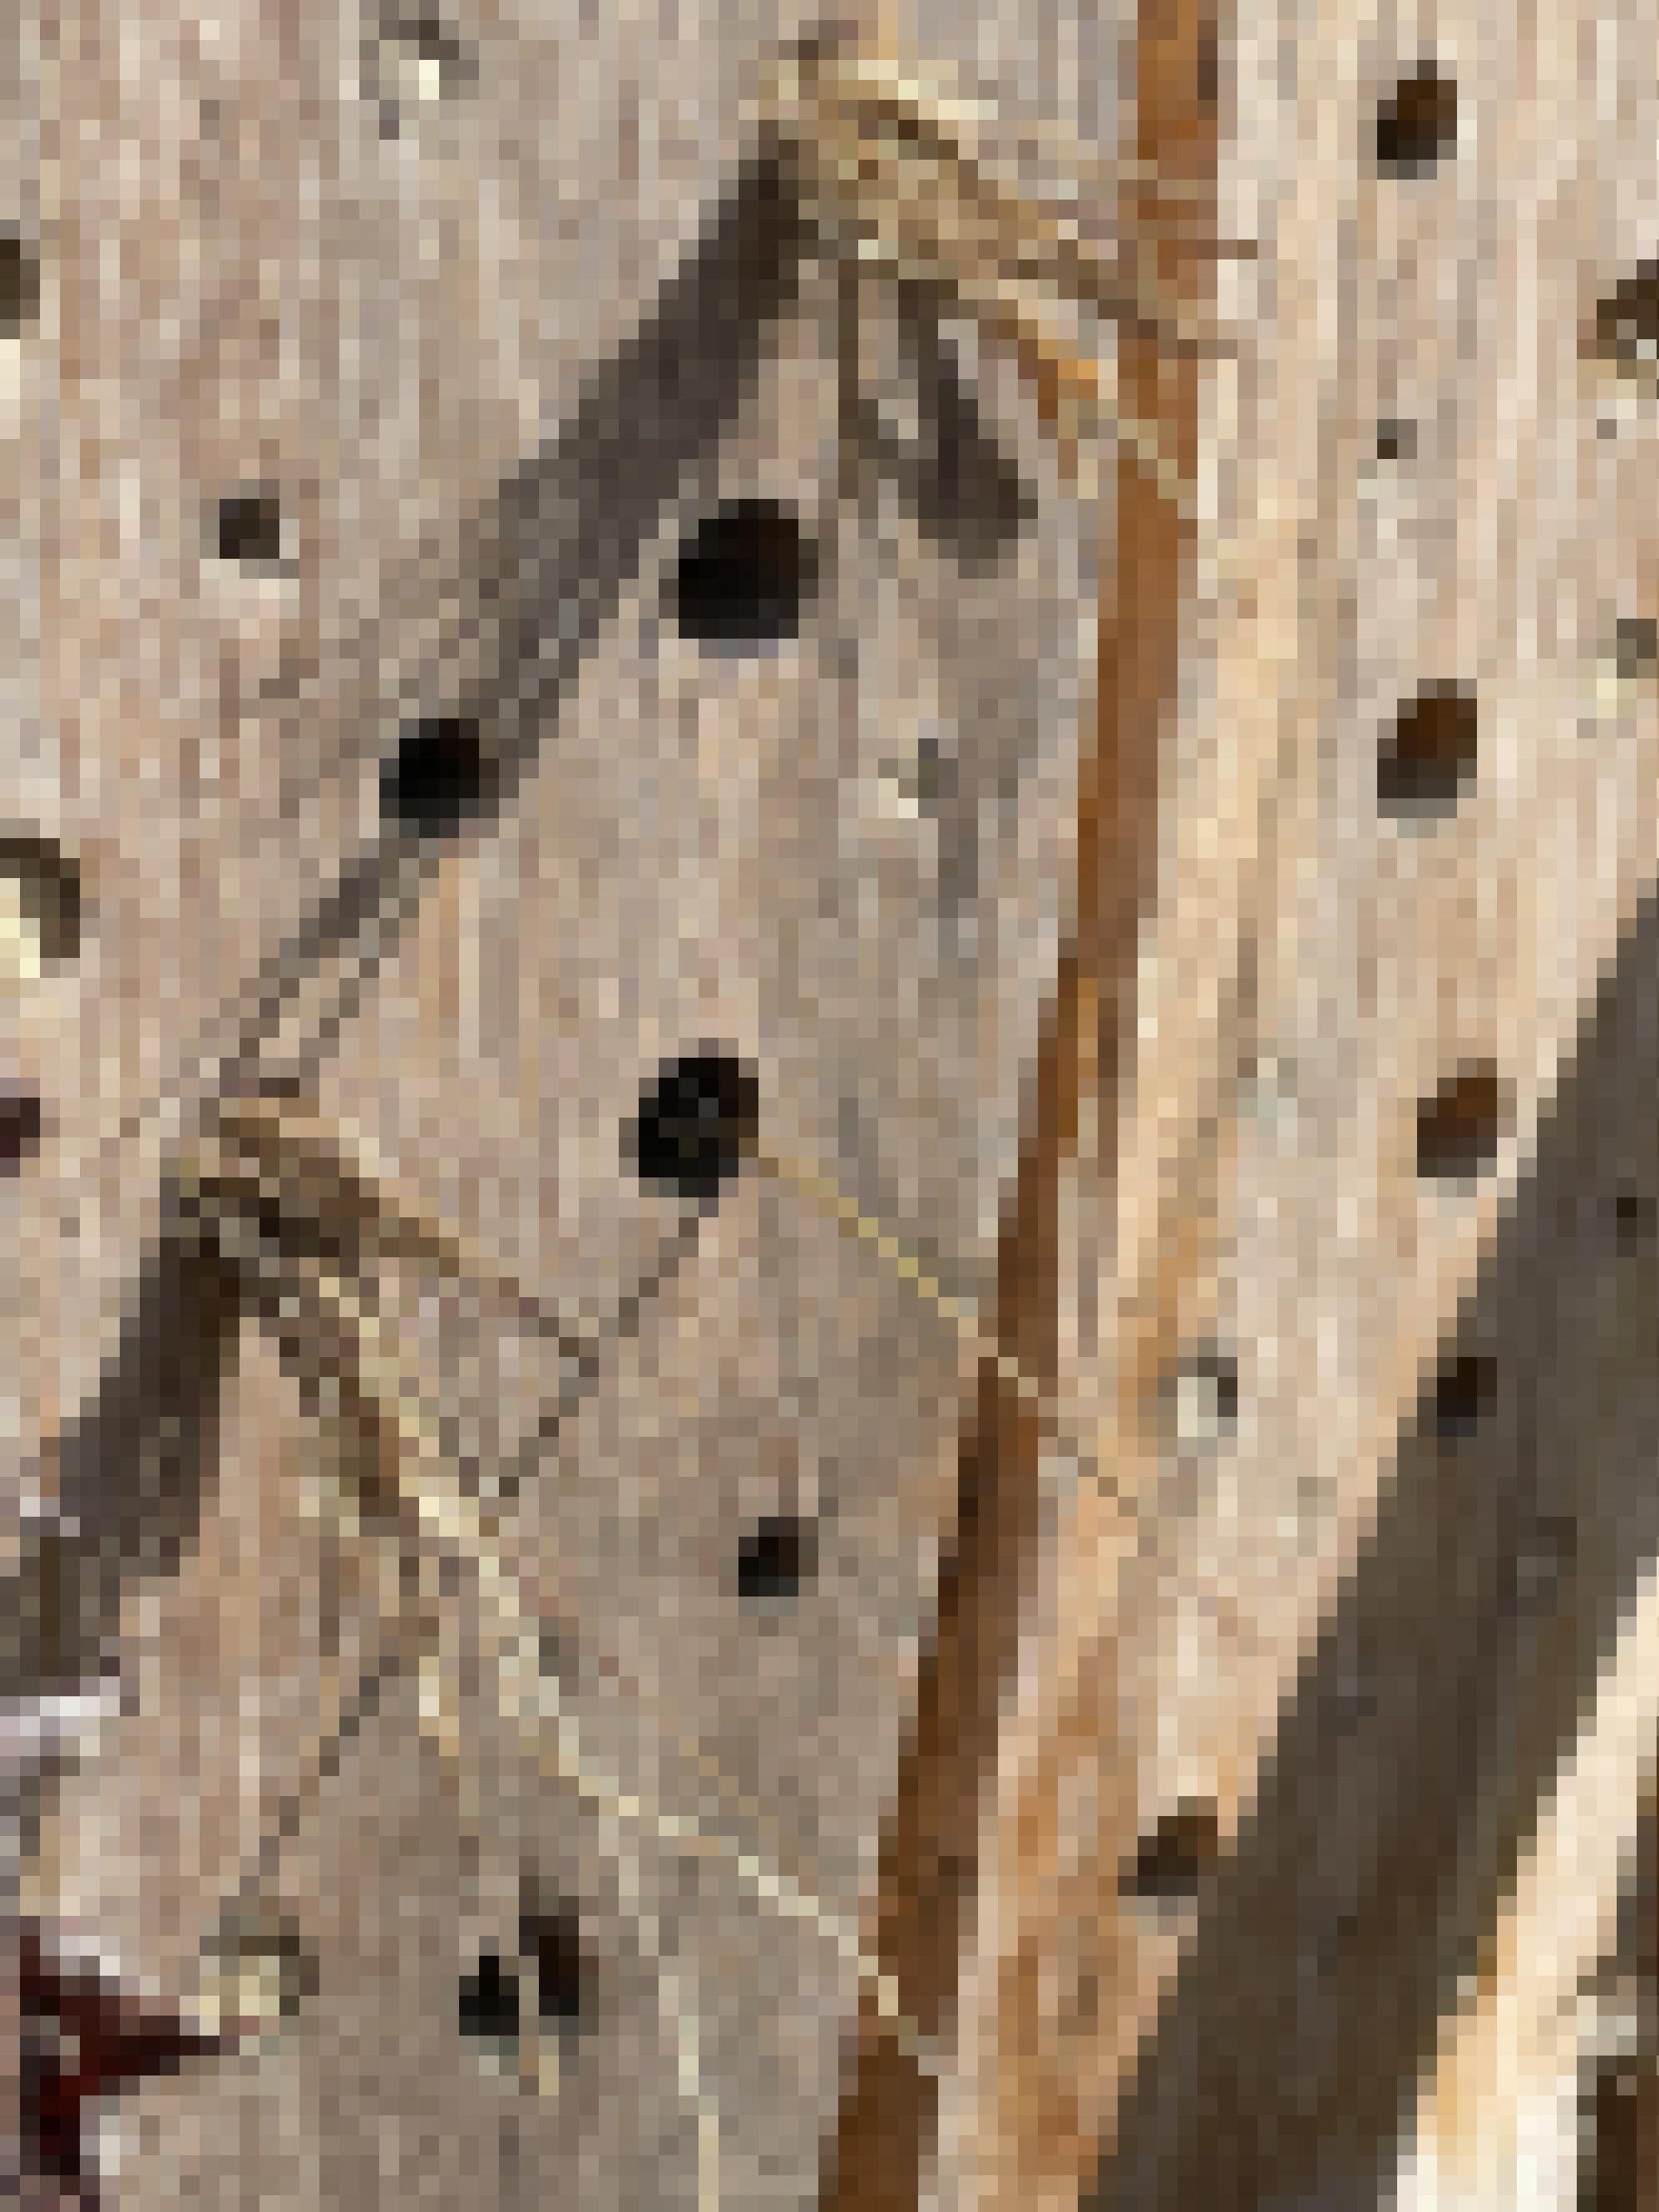 Ein Stück Holz, in das Löcher gebohrt sind. Aus manchen ragen Büschel langer trockener Grashalme.